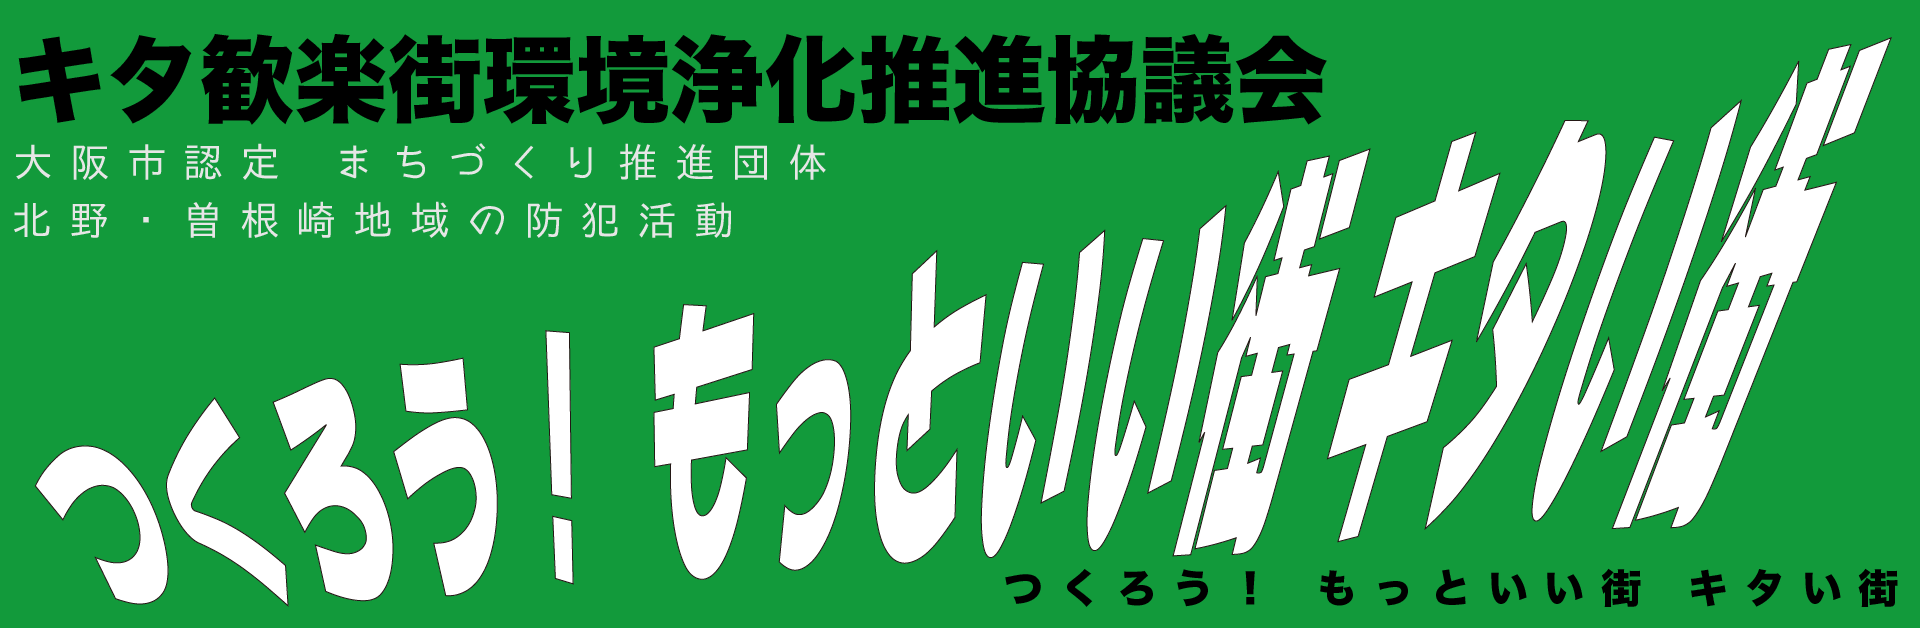 【公式】キタ歓楽街環境浄化推進協議会